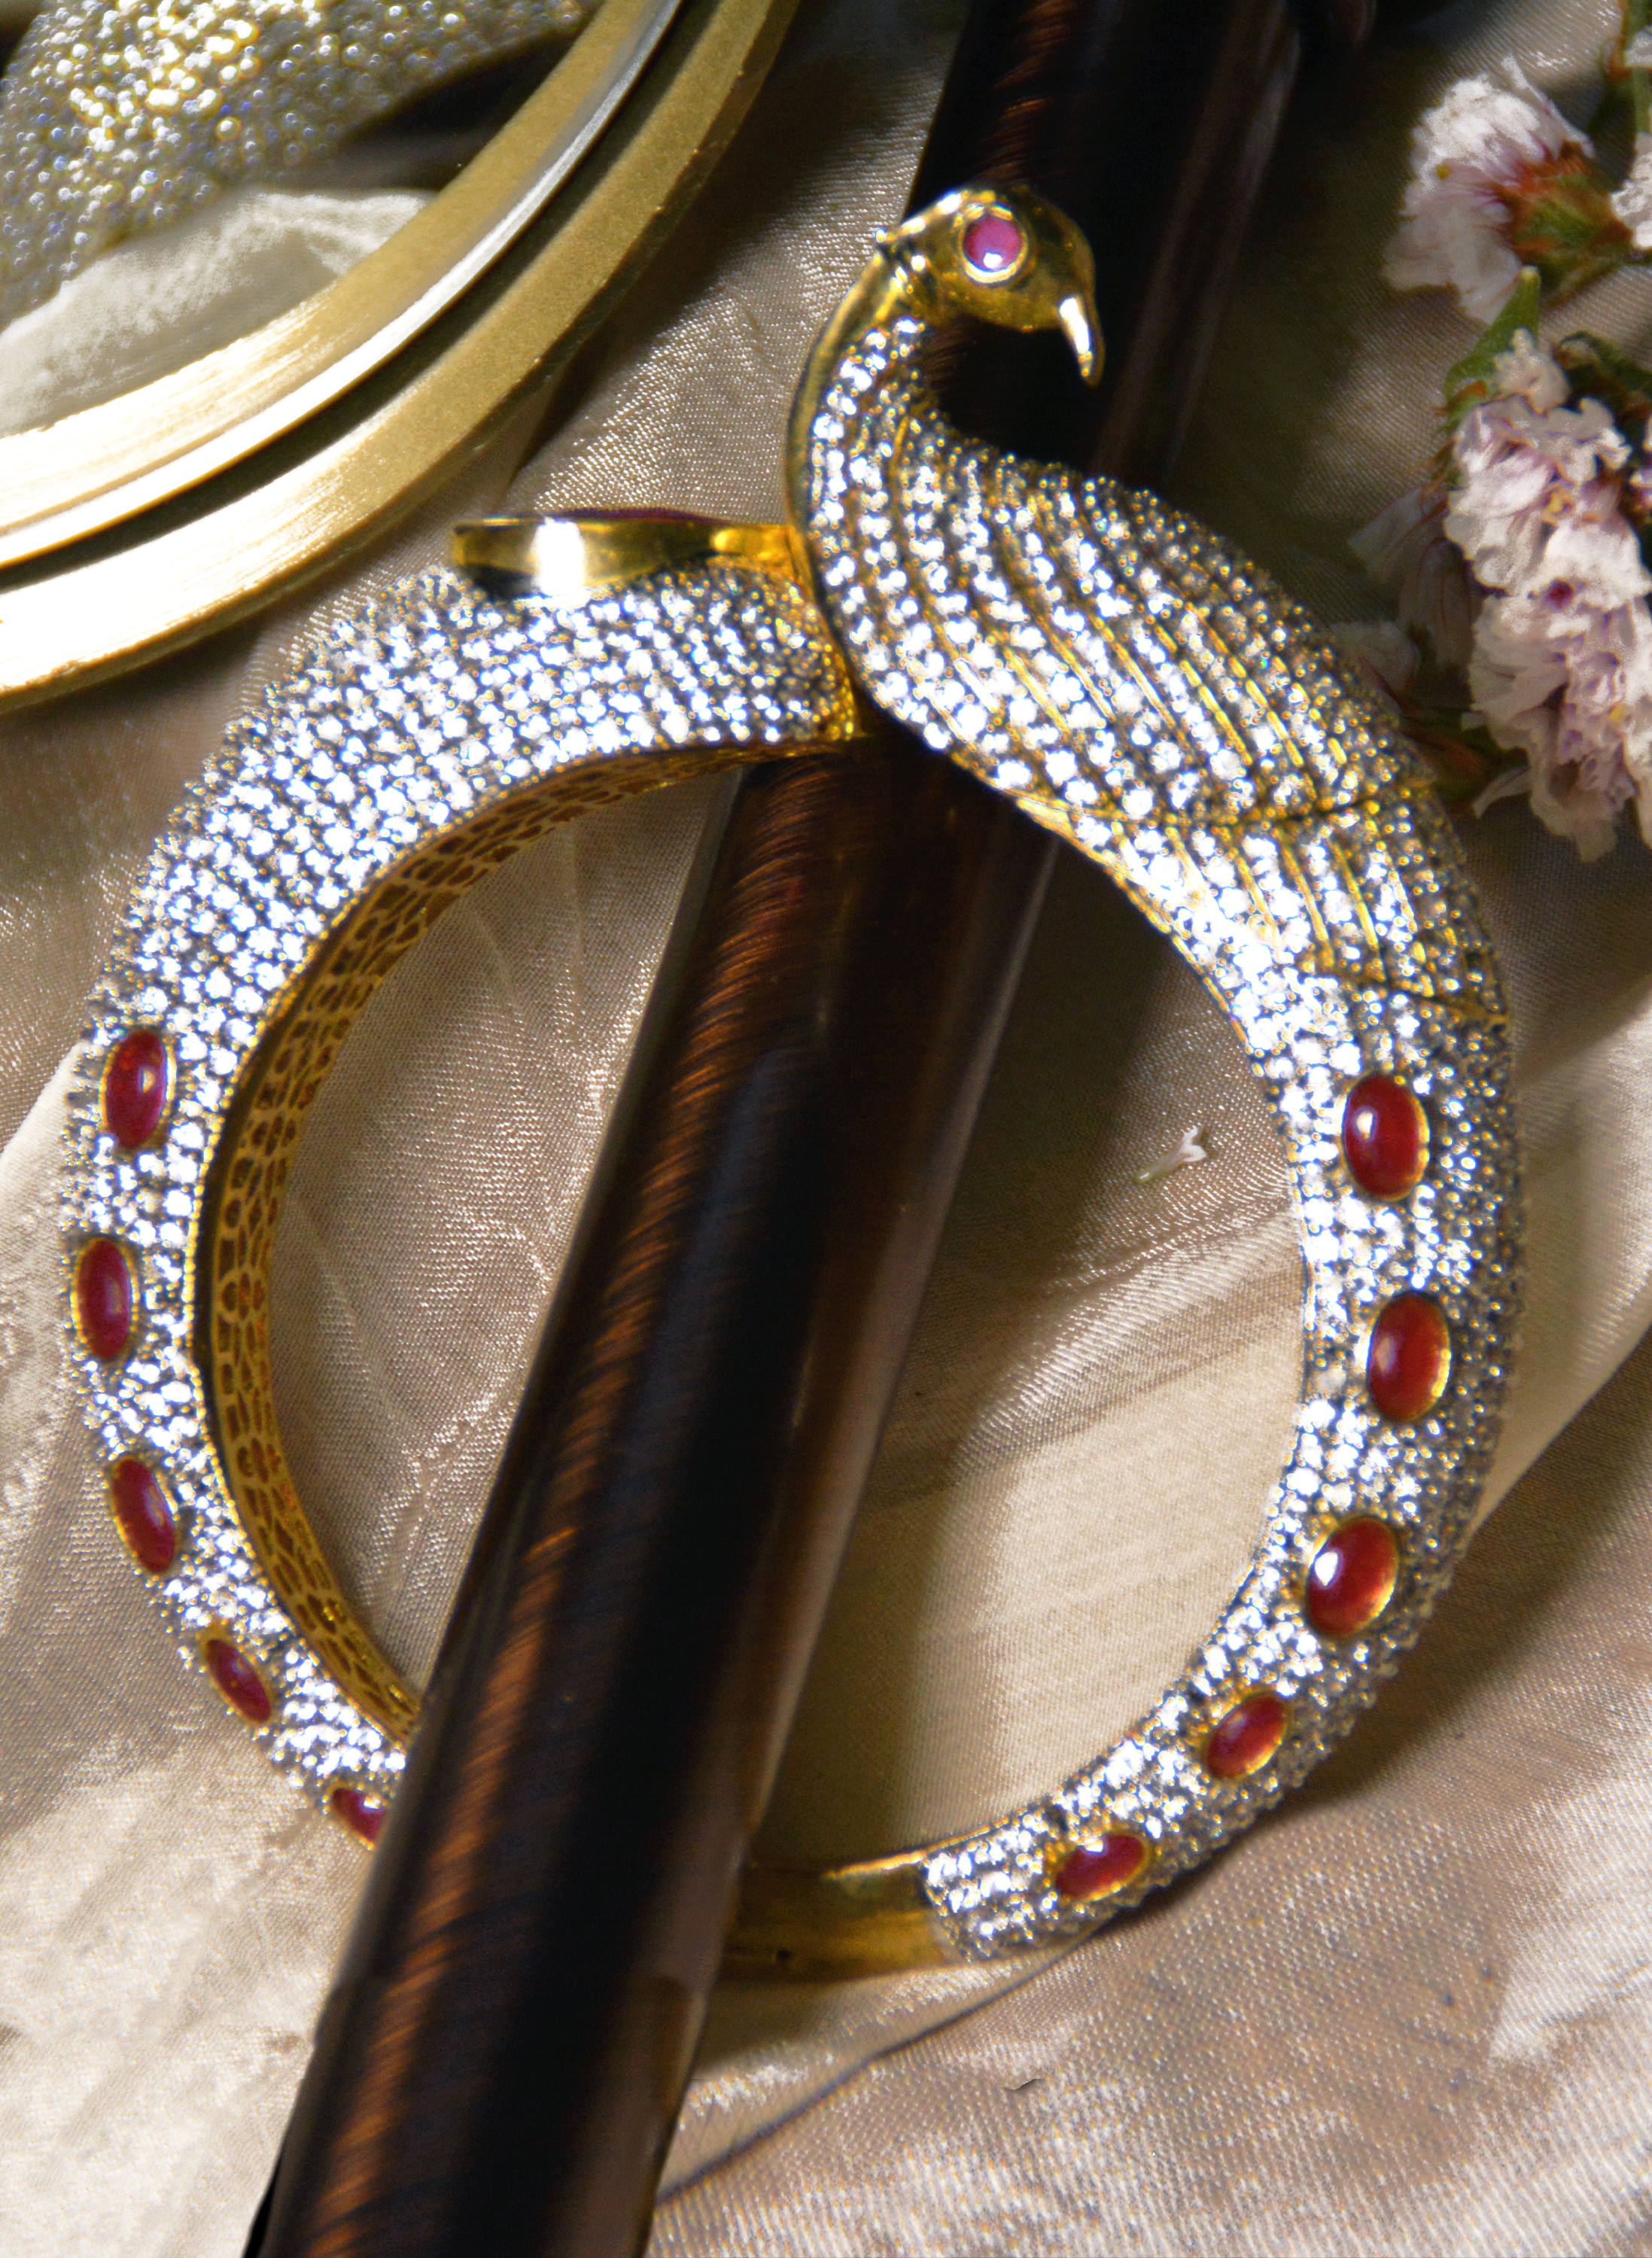 Swan cuff bracelet with red onyx & CZ stones